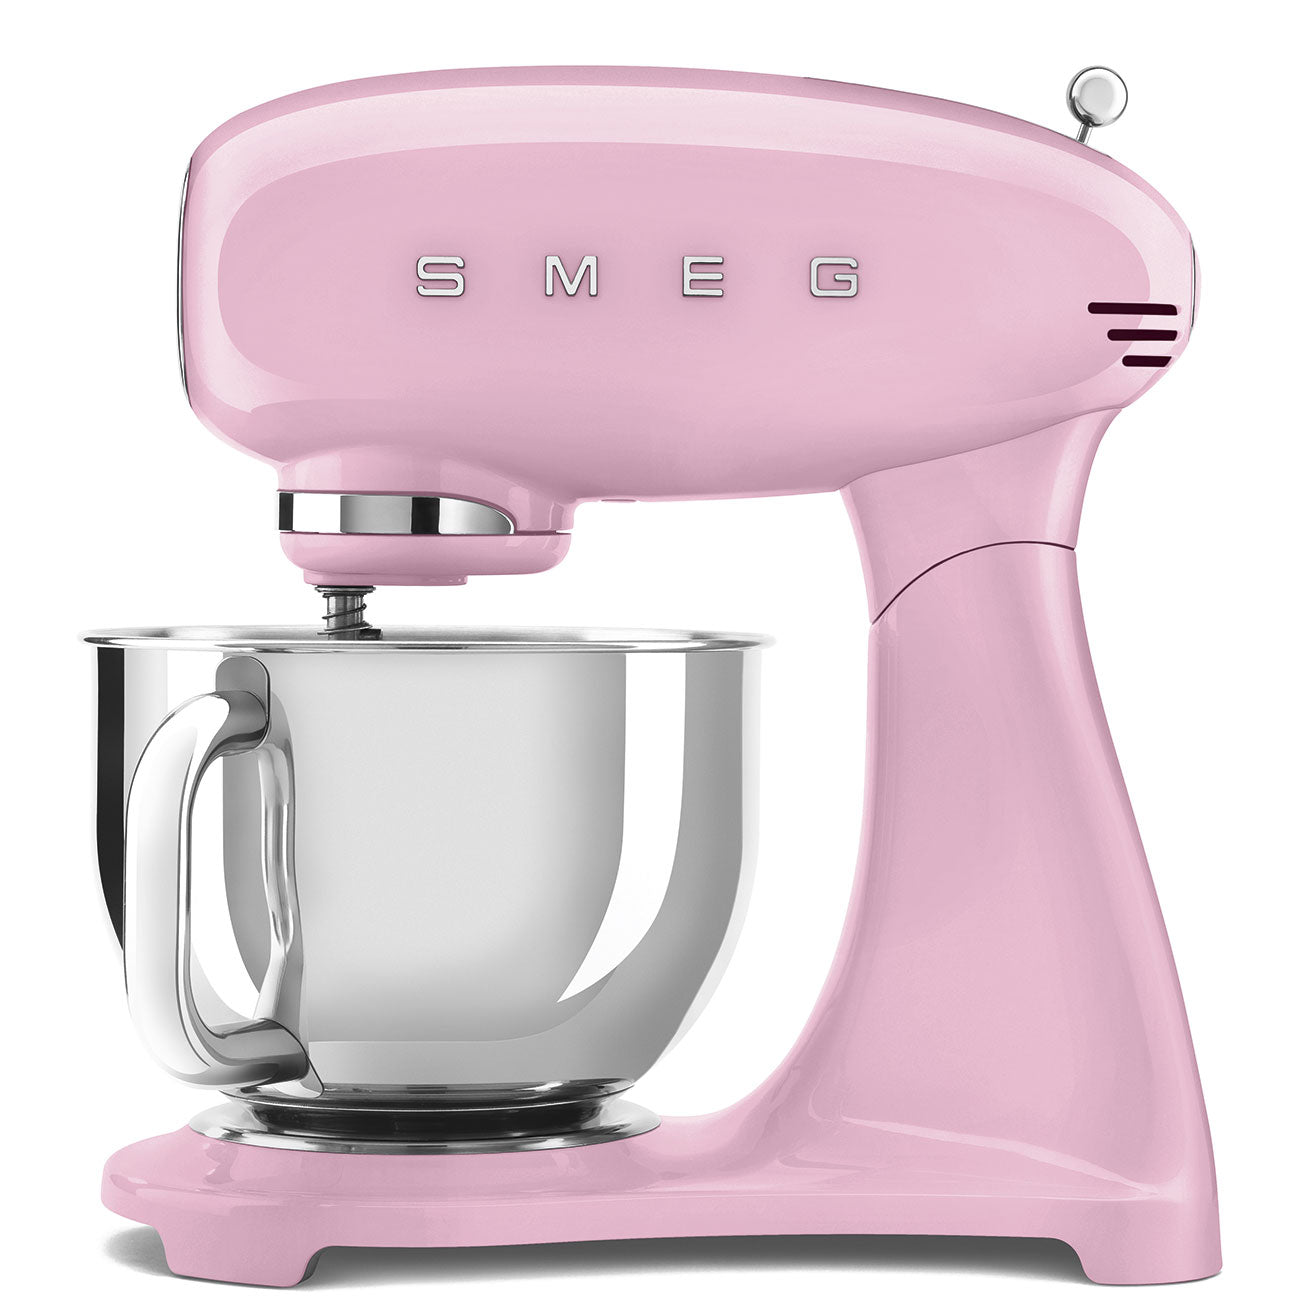 Bestseller|Kleingeräte|Küchenmaschine|Pink|smf03 Pink SMF03PKEU Küchenmaschine Smeg SMEG (800 Watt) 50\'s Küchenmaschine Design